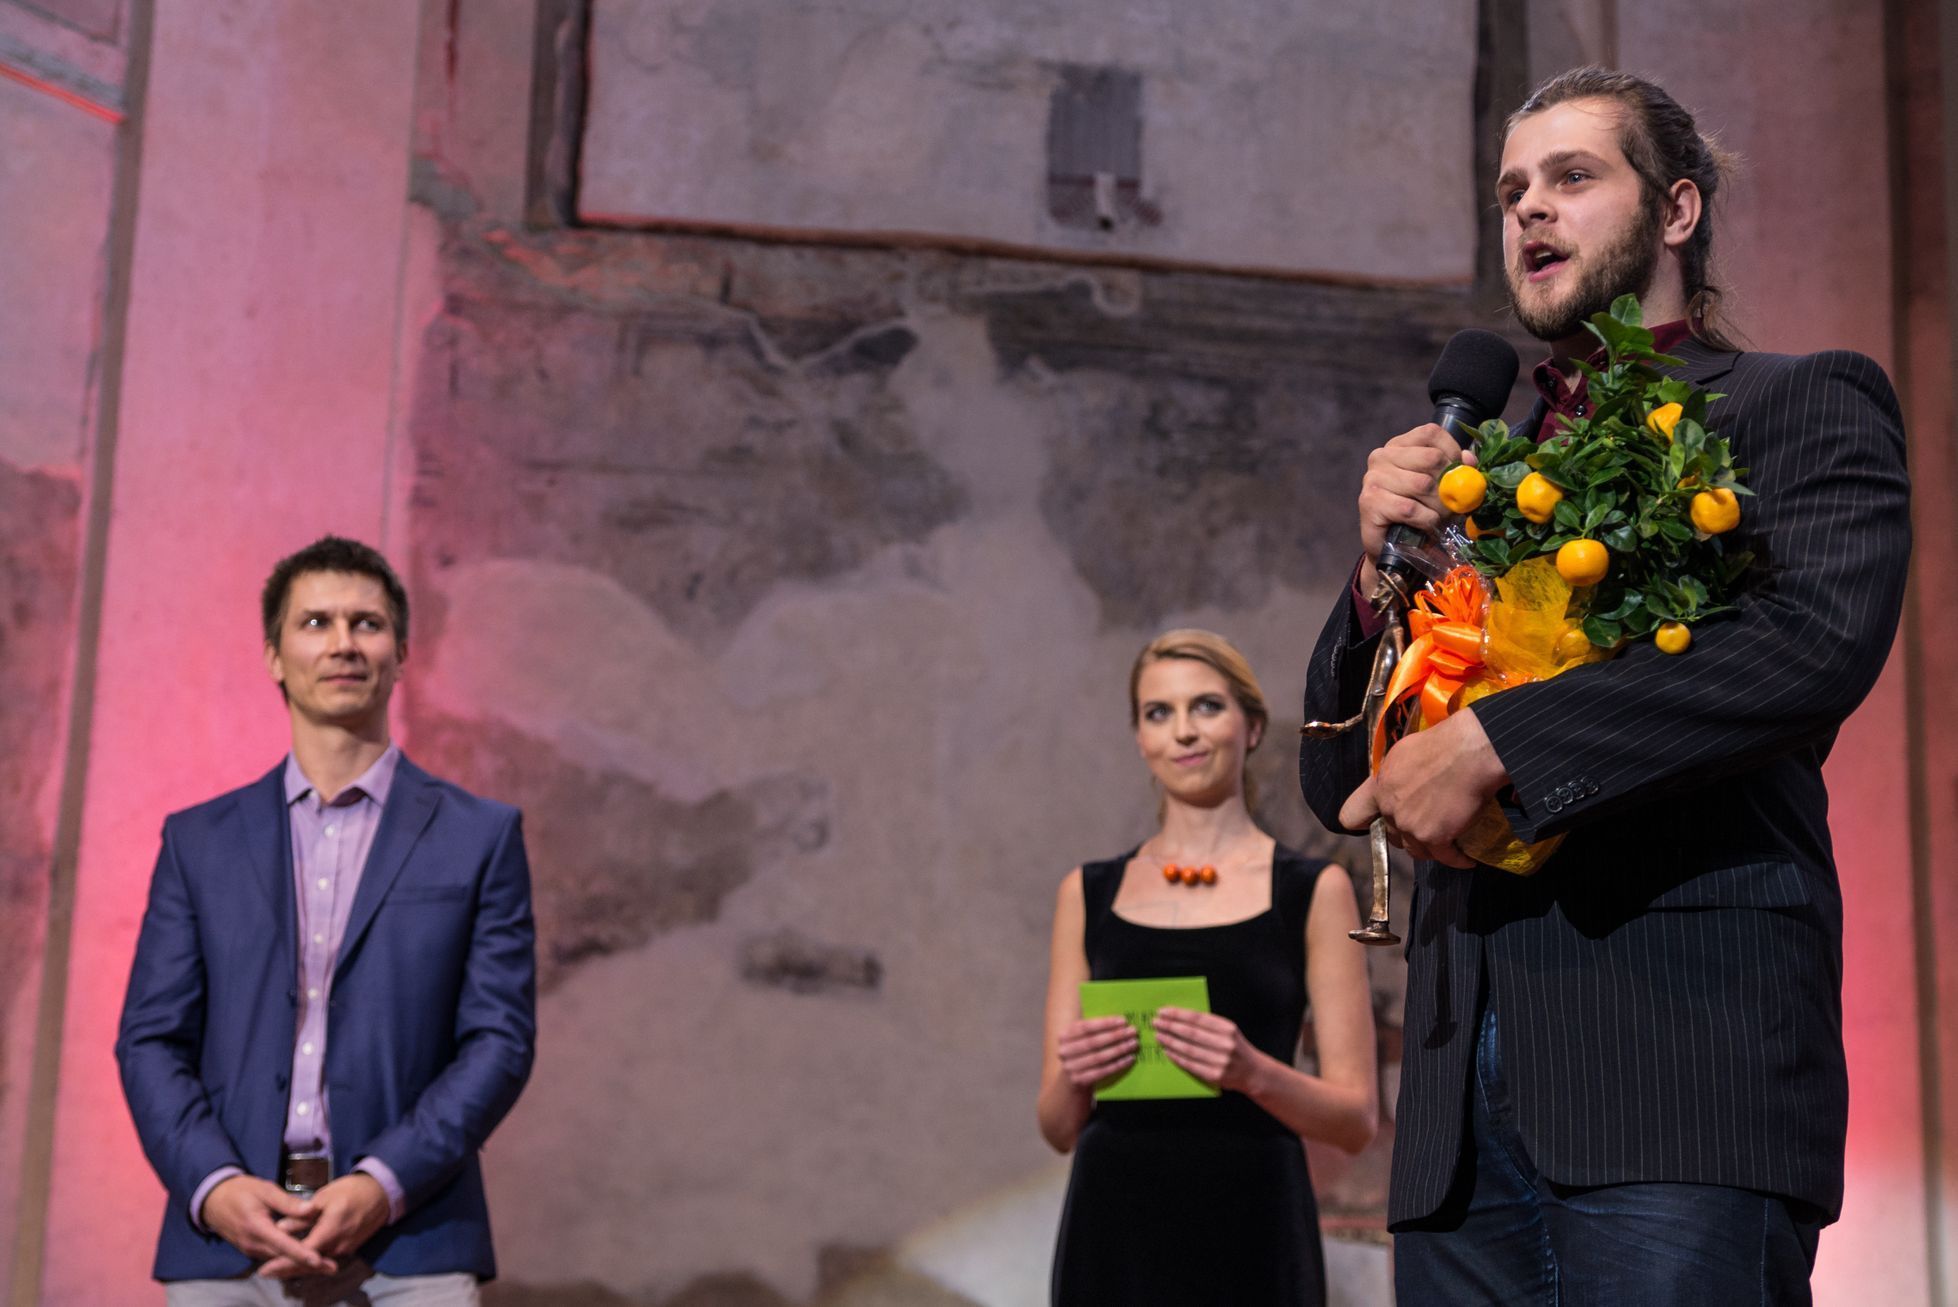 Ocenění čeští filantropové v rámci dvacátého ročníu Cen Via Bona